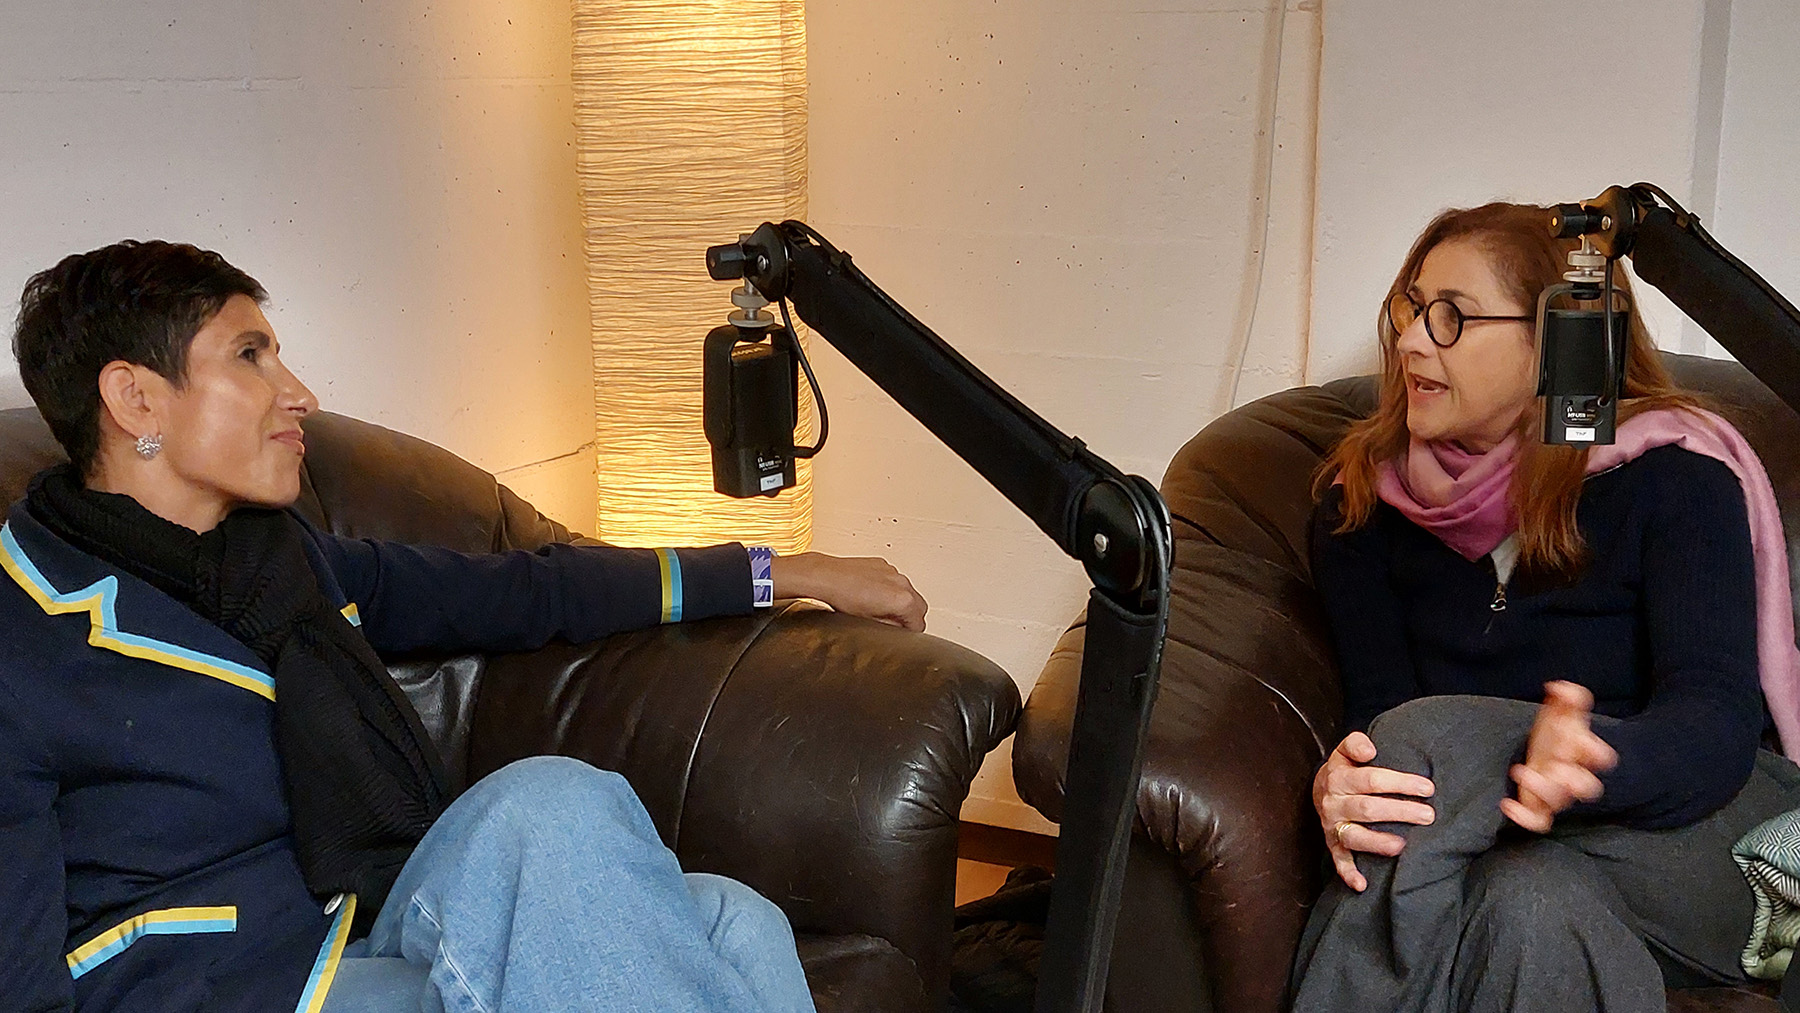 Foto von der Podcast-Aufzeichnung: Zwei Frauen sitzen auf einem Ledersofa und einem Ledersessel, Mikrofone hängen an Mikrofonarmen vor ihnen. Die Frau links gestikuliert mit den Händen und redet, die andere hört ihr ein bisschen skeptisch aber wohlwollend zu